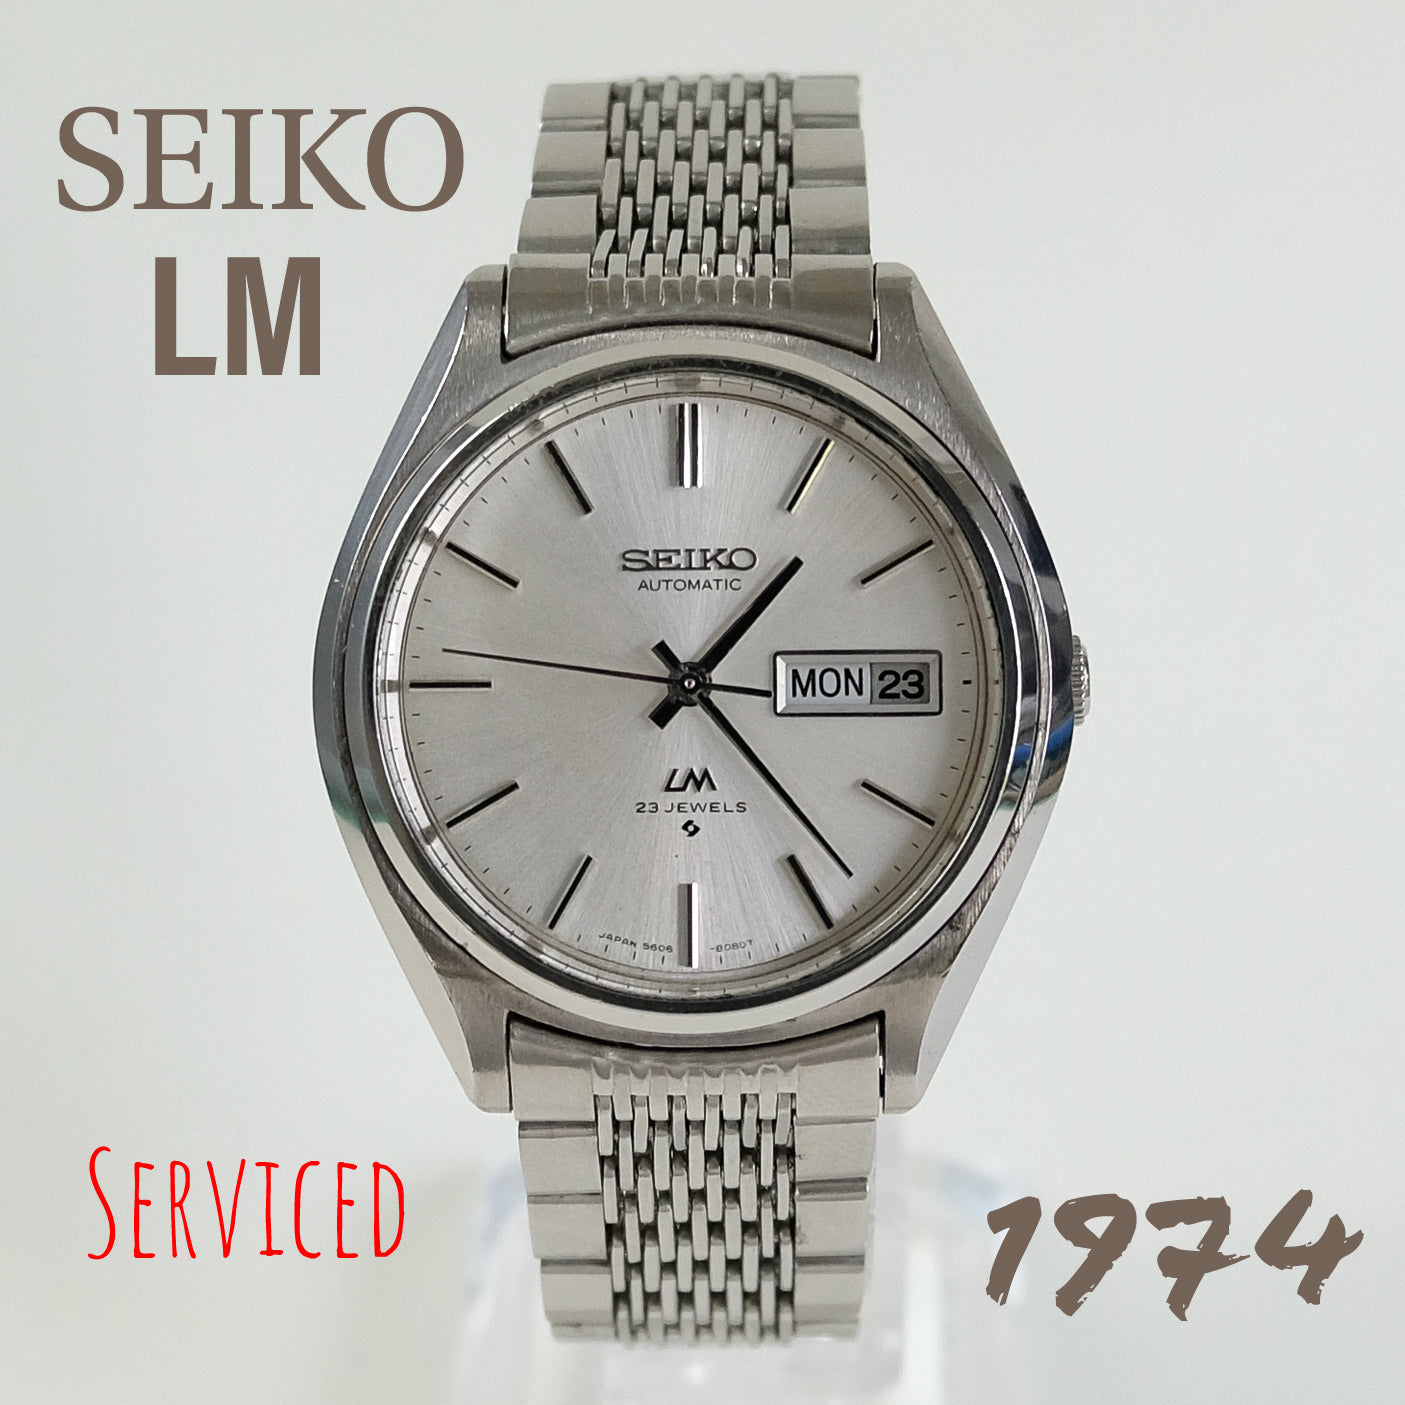 1974 Seiko LM 5606-8050